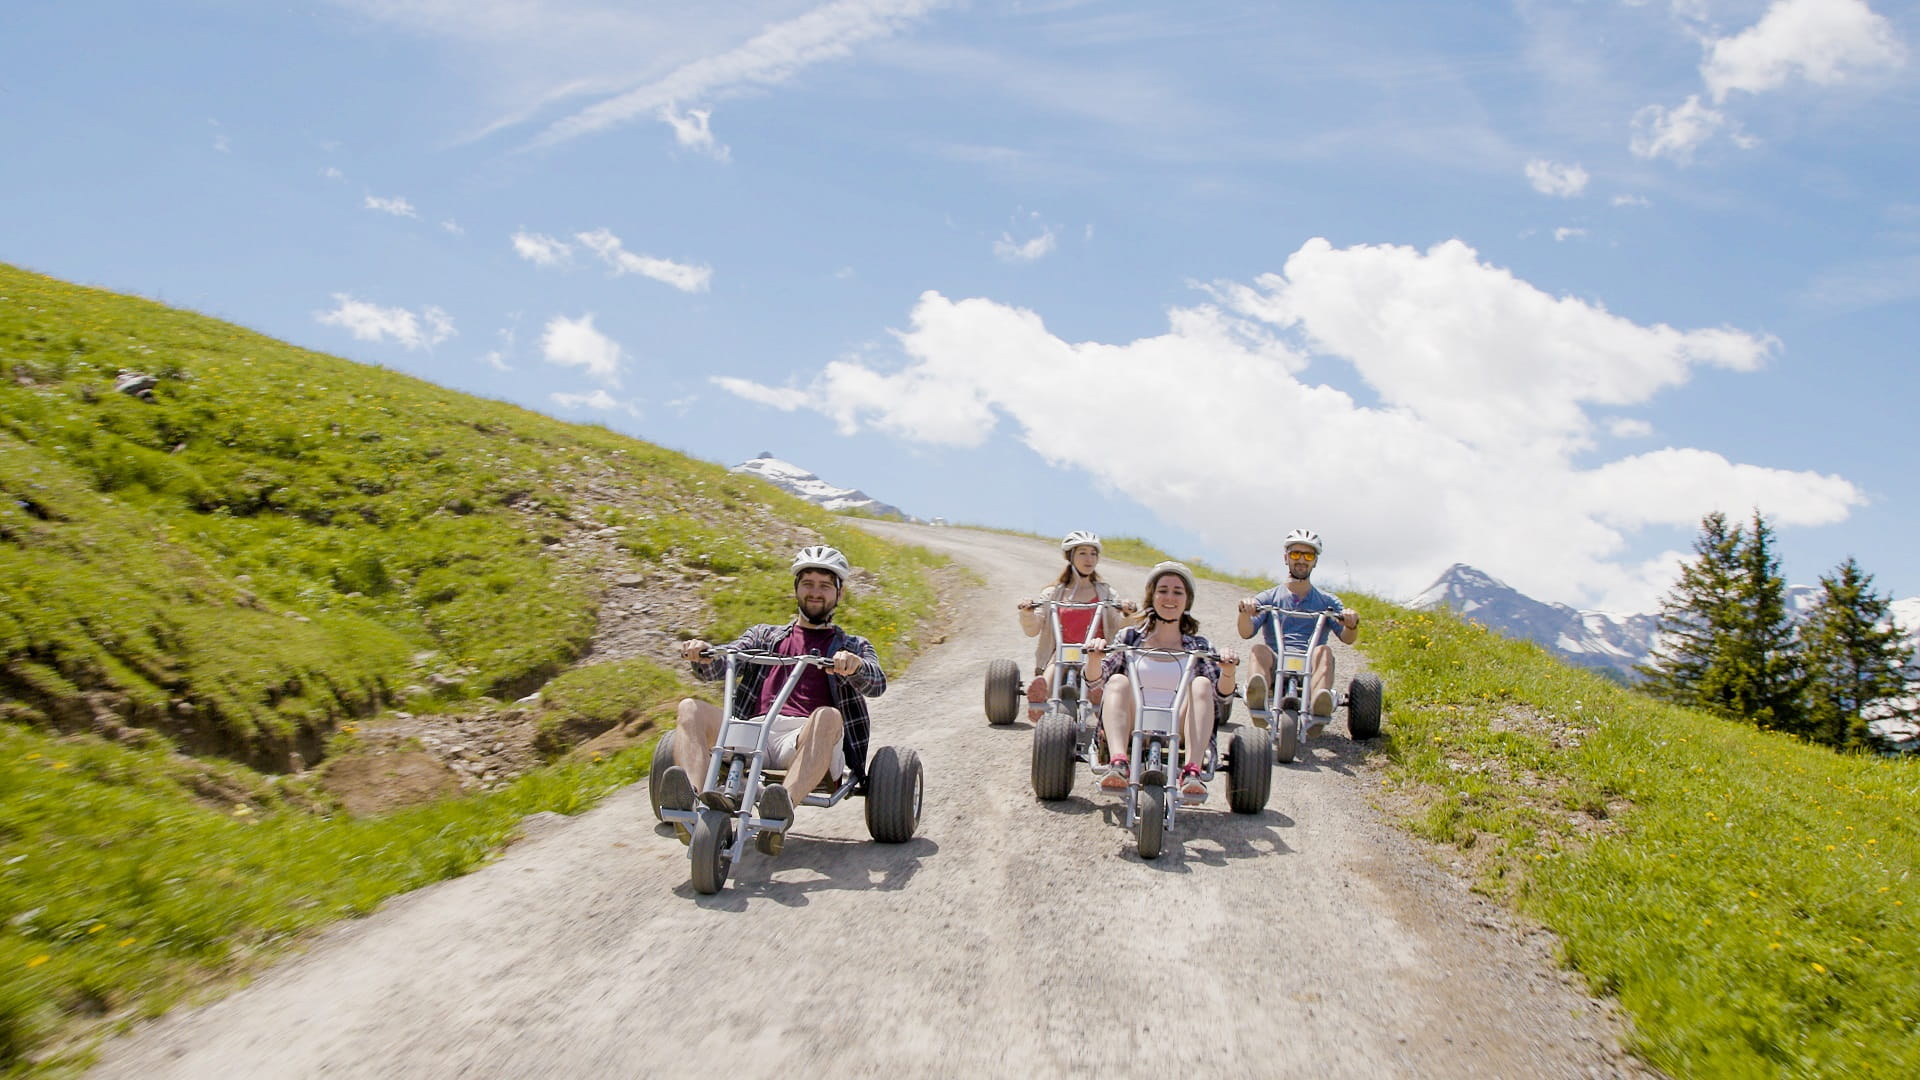 Die MountainCarts versprechen einfachen, komfortablen und sicheren Fahrspass, eigenen sich sowohl für Familien als auch für Gruppen und sind im Berner Oberland einzigartig.